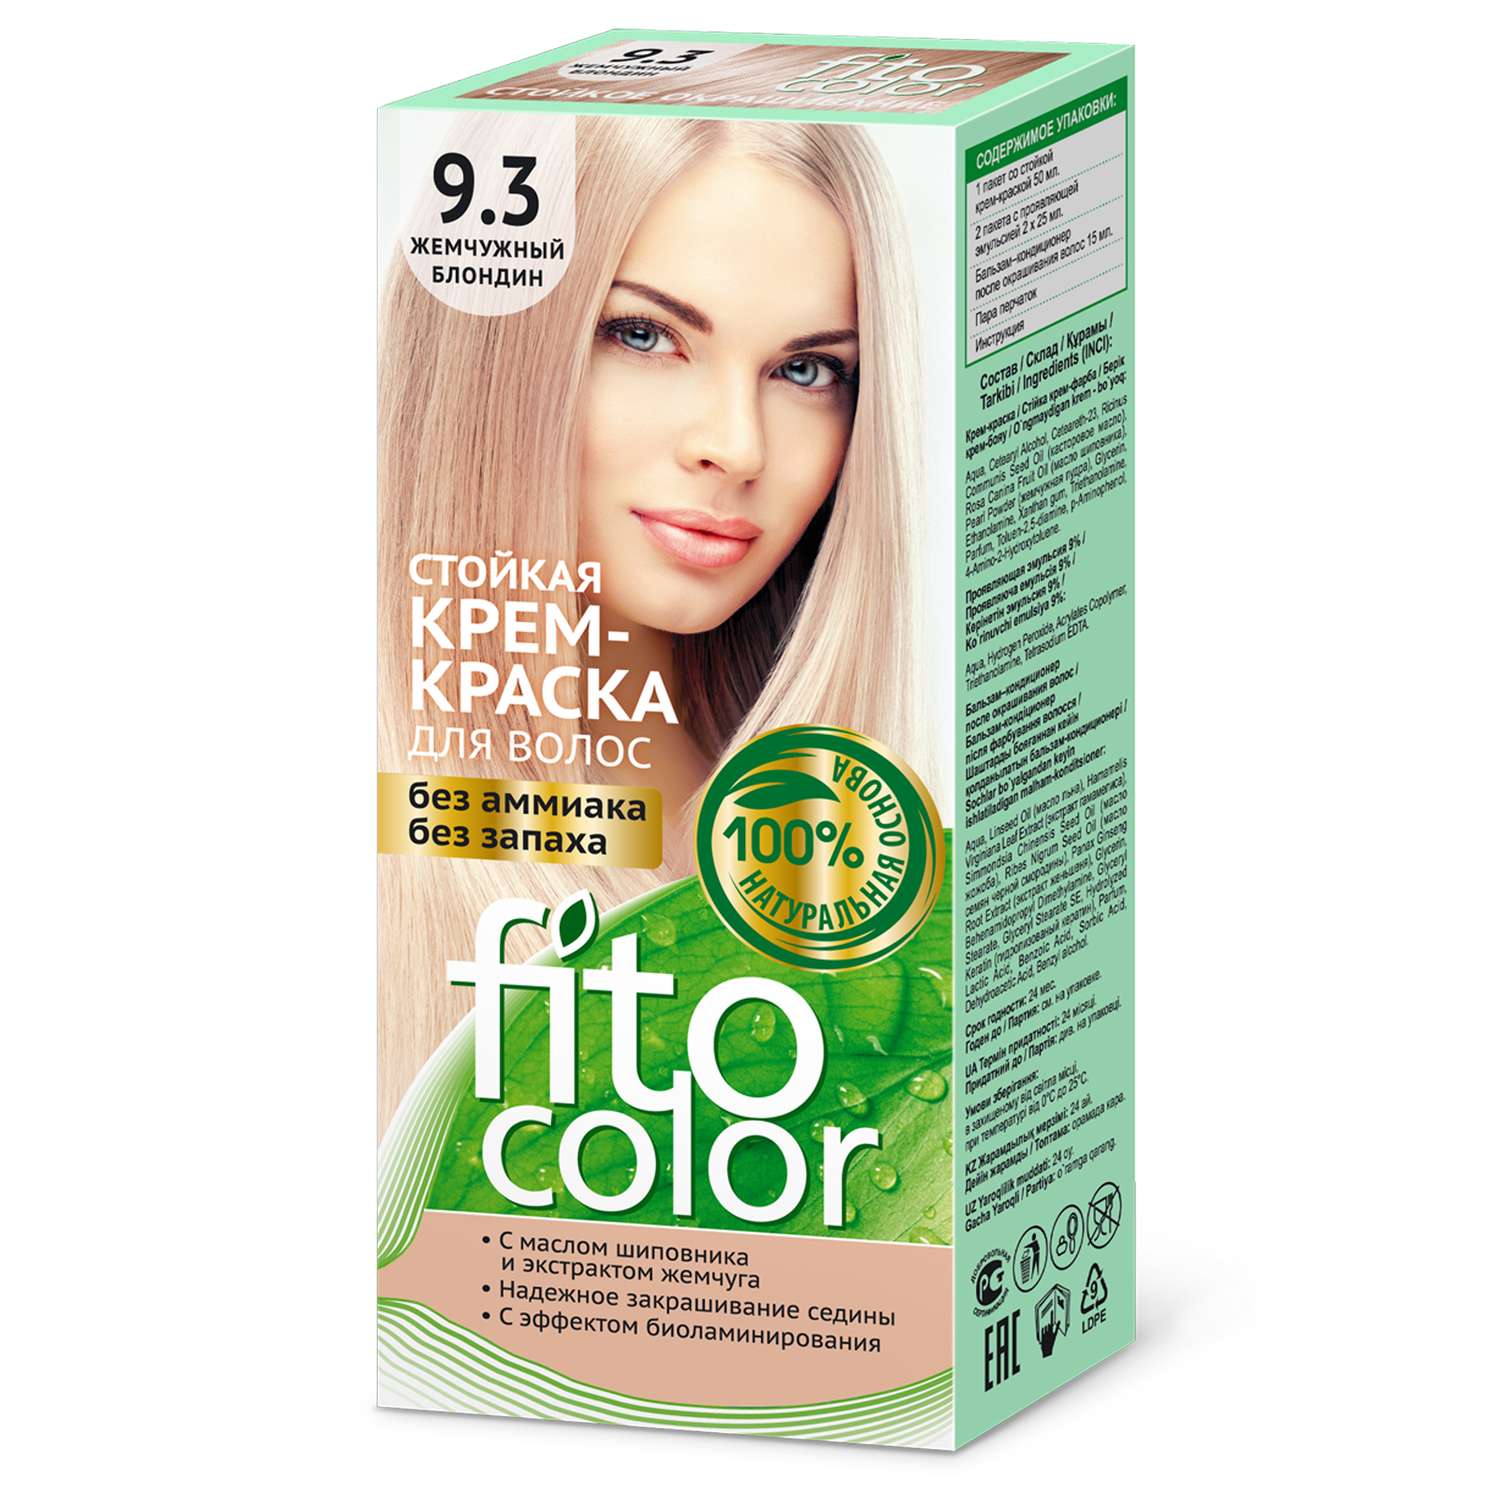 Крем-краска для волос fito косметик Fitocolor тон 9.3 жемчужный блондин 115мл - фото 1